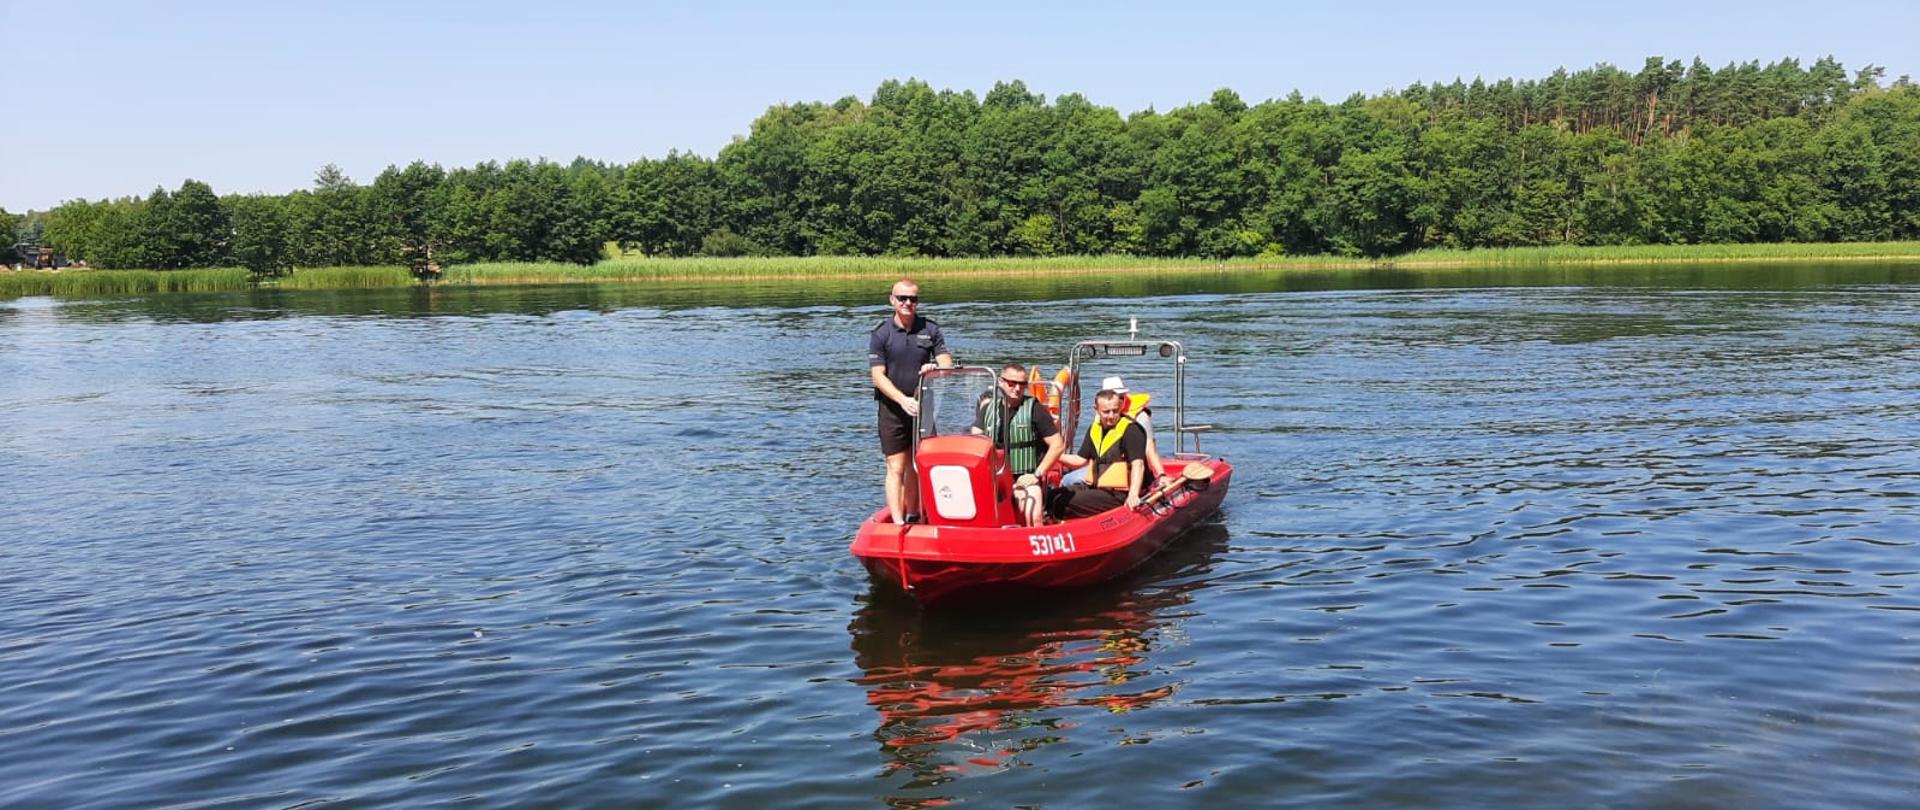 Na jeziorze płynie łódka skierowana dziobem do fotografa Państwowej Straży Pożarnej na której znajdują się funkcjonariusze Państwowej Straży Pożarnej i Policji.